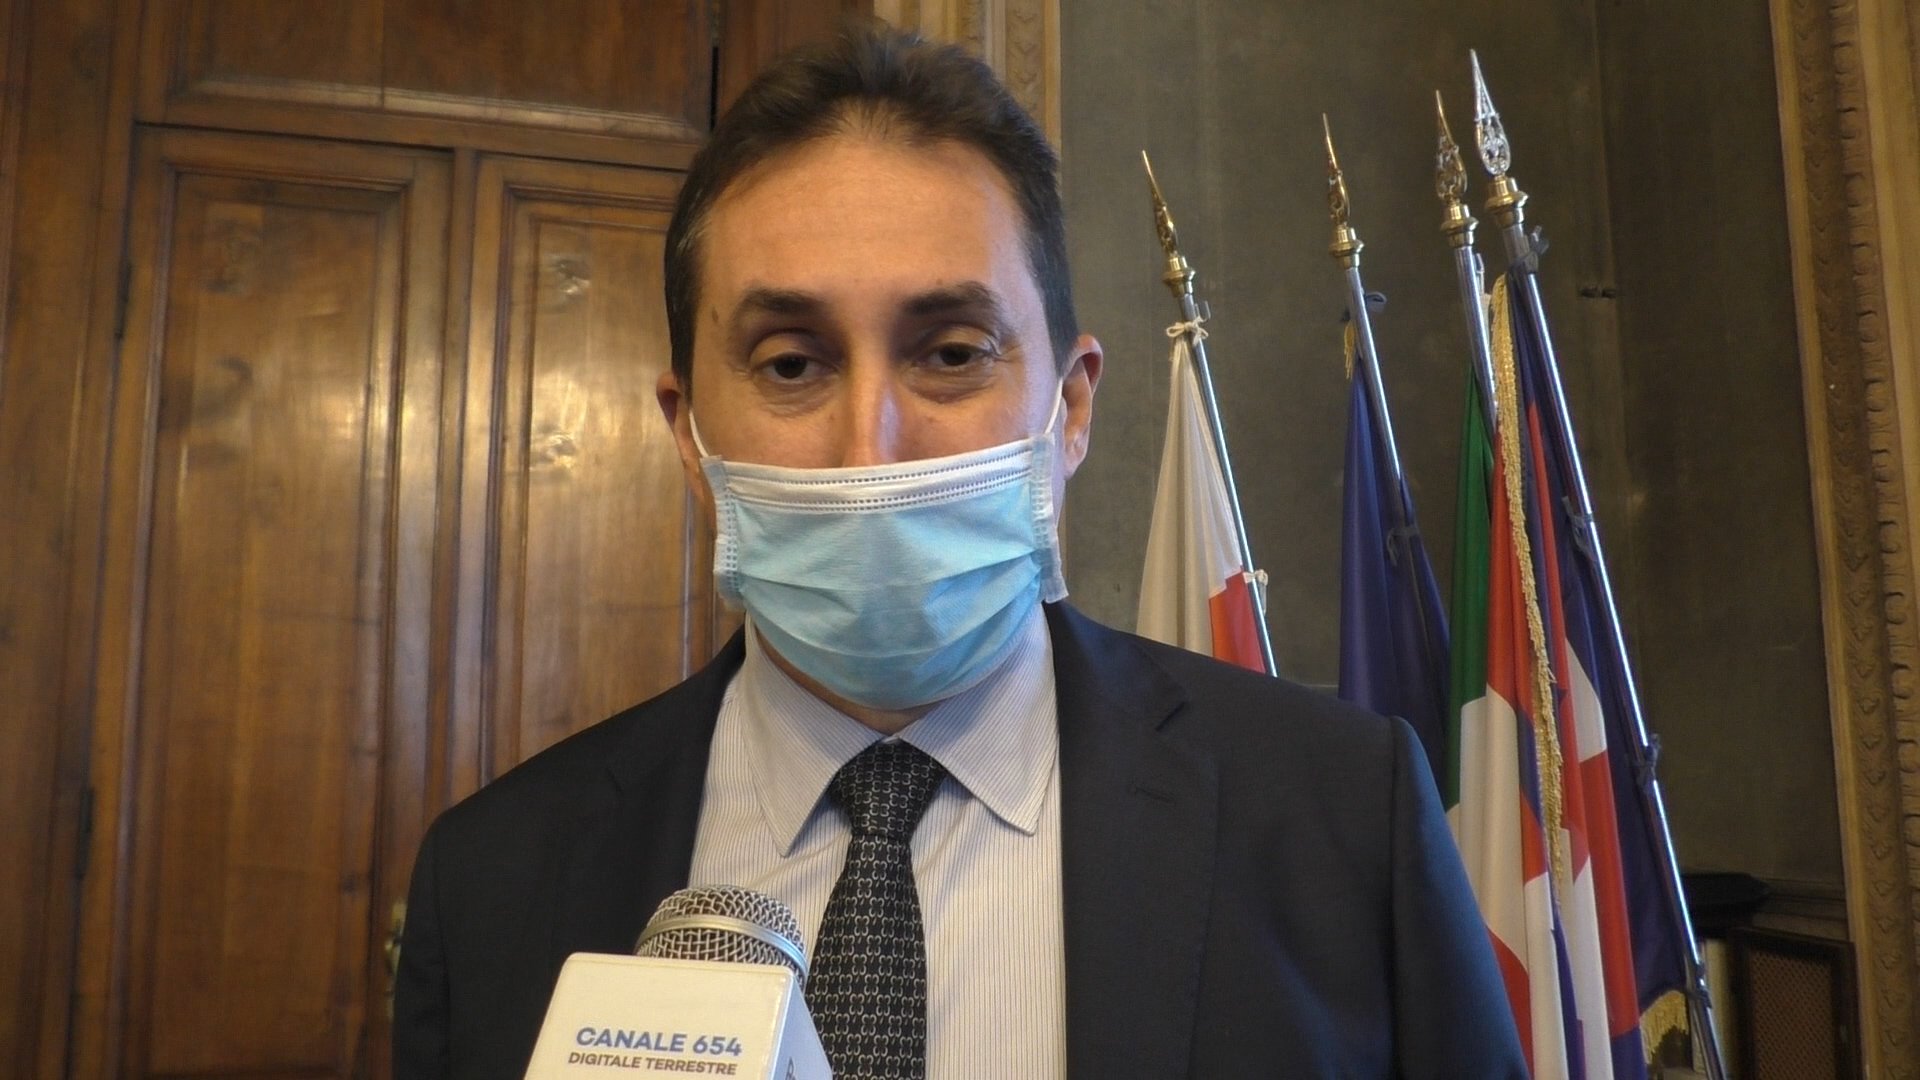 L’assessore Davide Buzzi Langhi positivo al covid, Comune di Alessandria: “Nessuna norma violata”